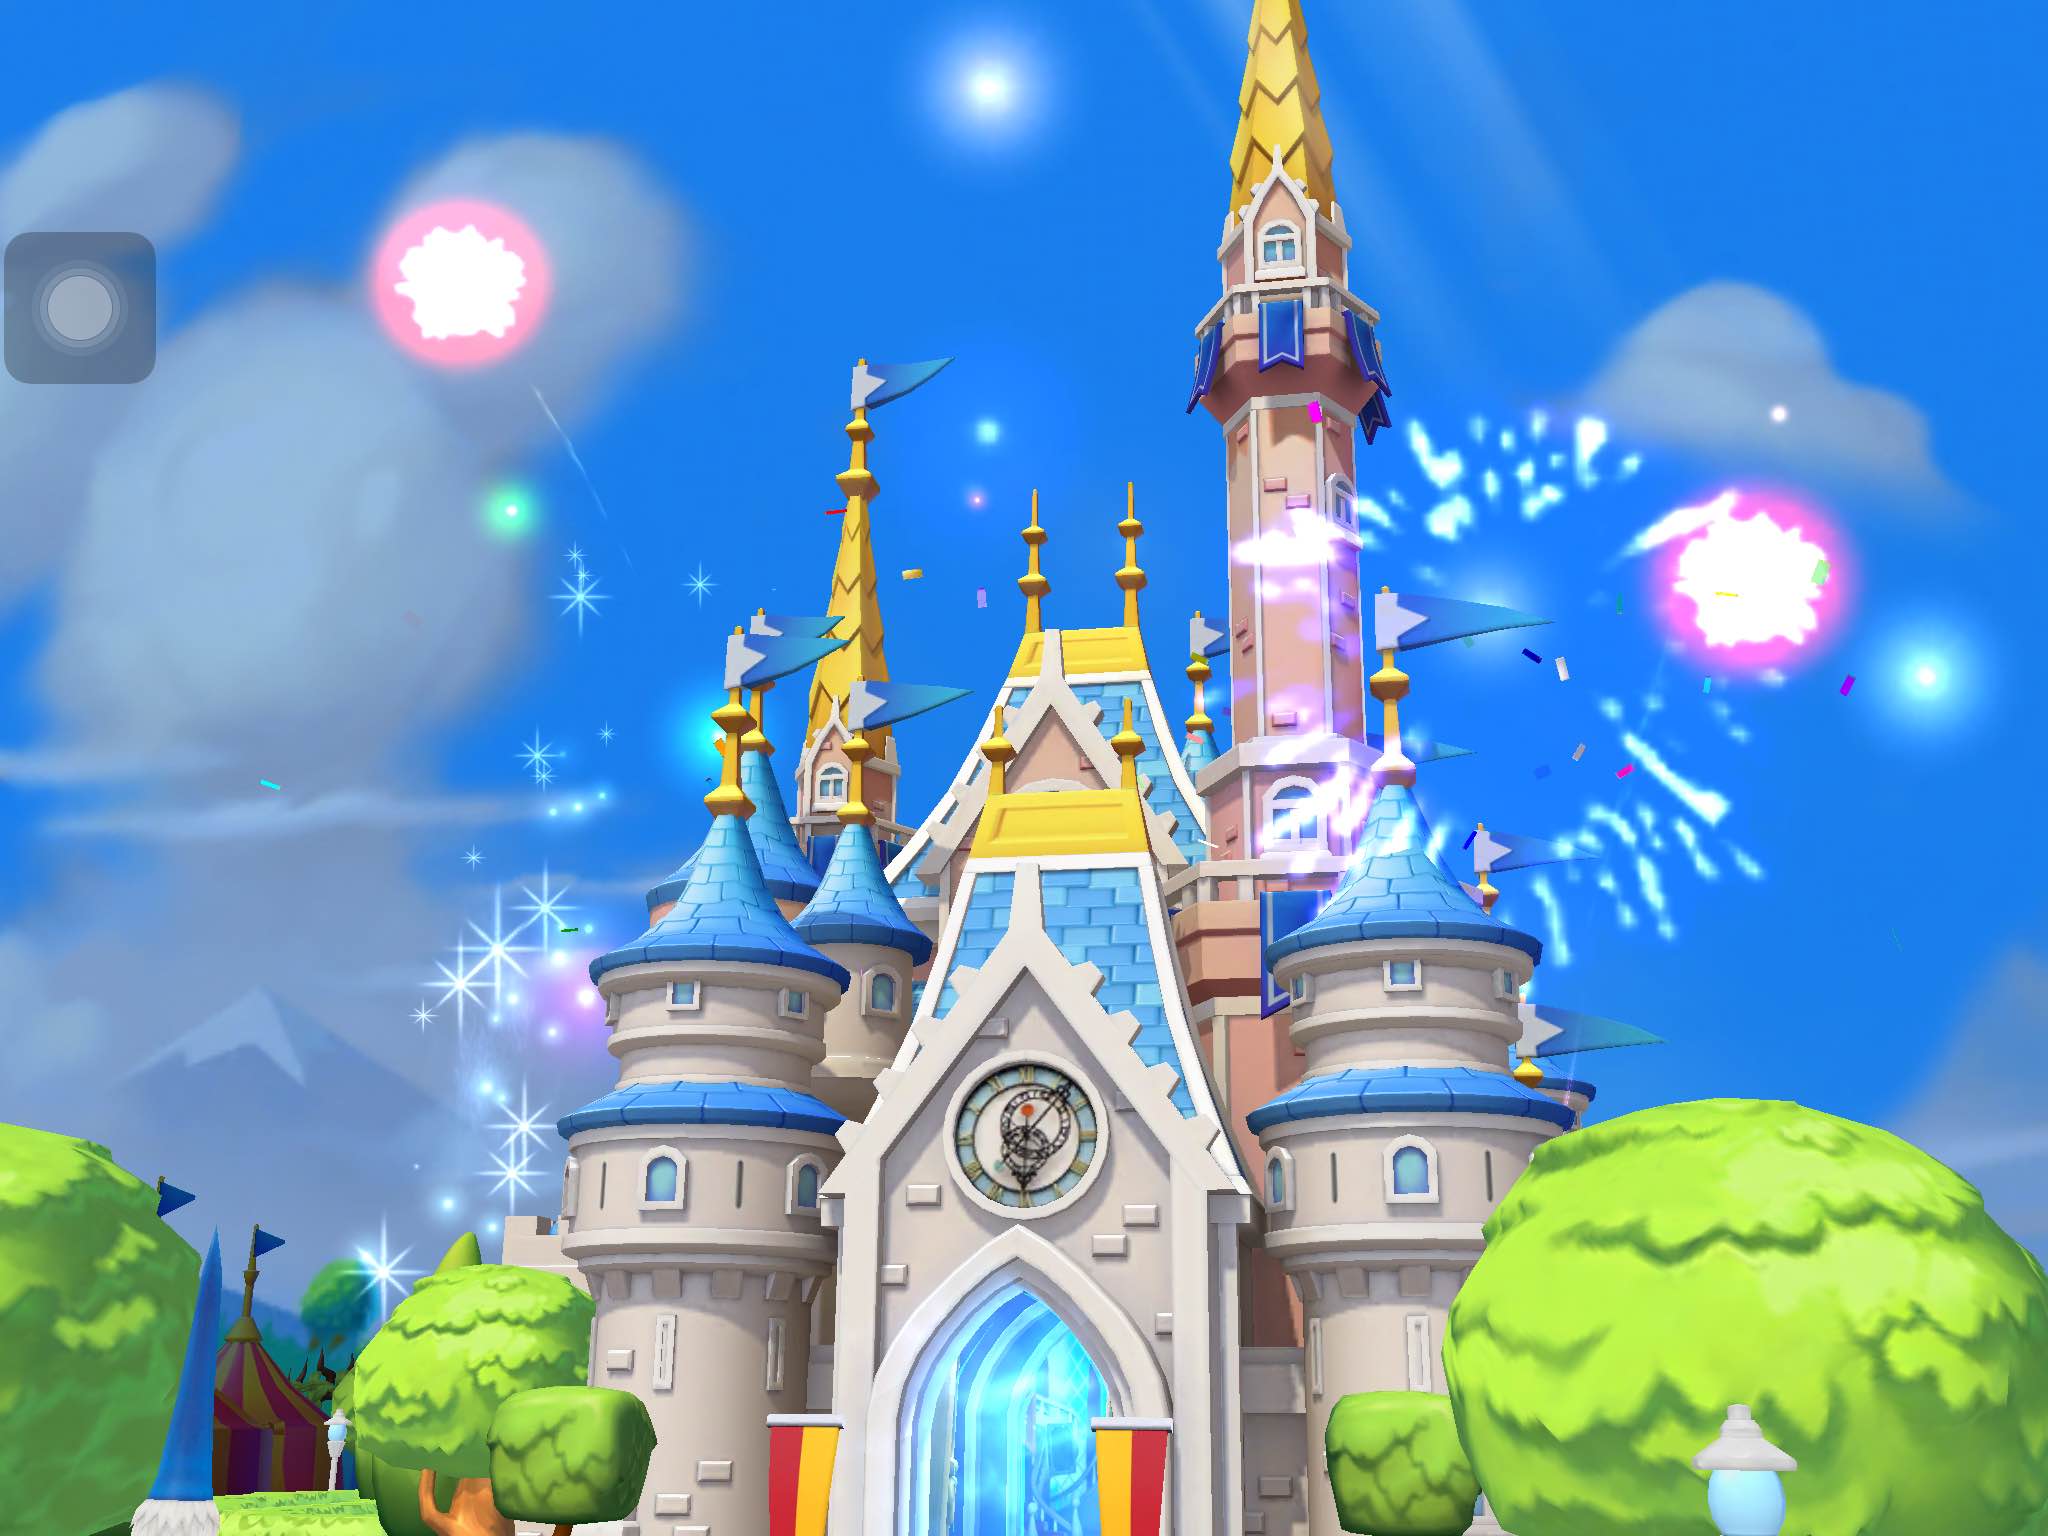 Gameloft ra mắt game mới kể về câu chuyện cổ tích xứ sở Disneyland